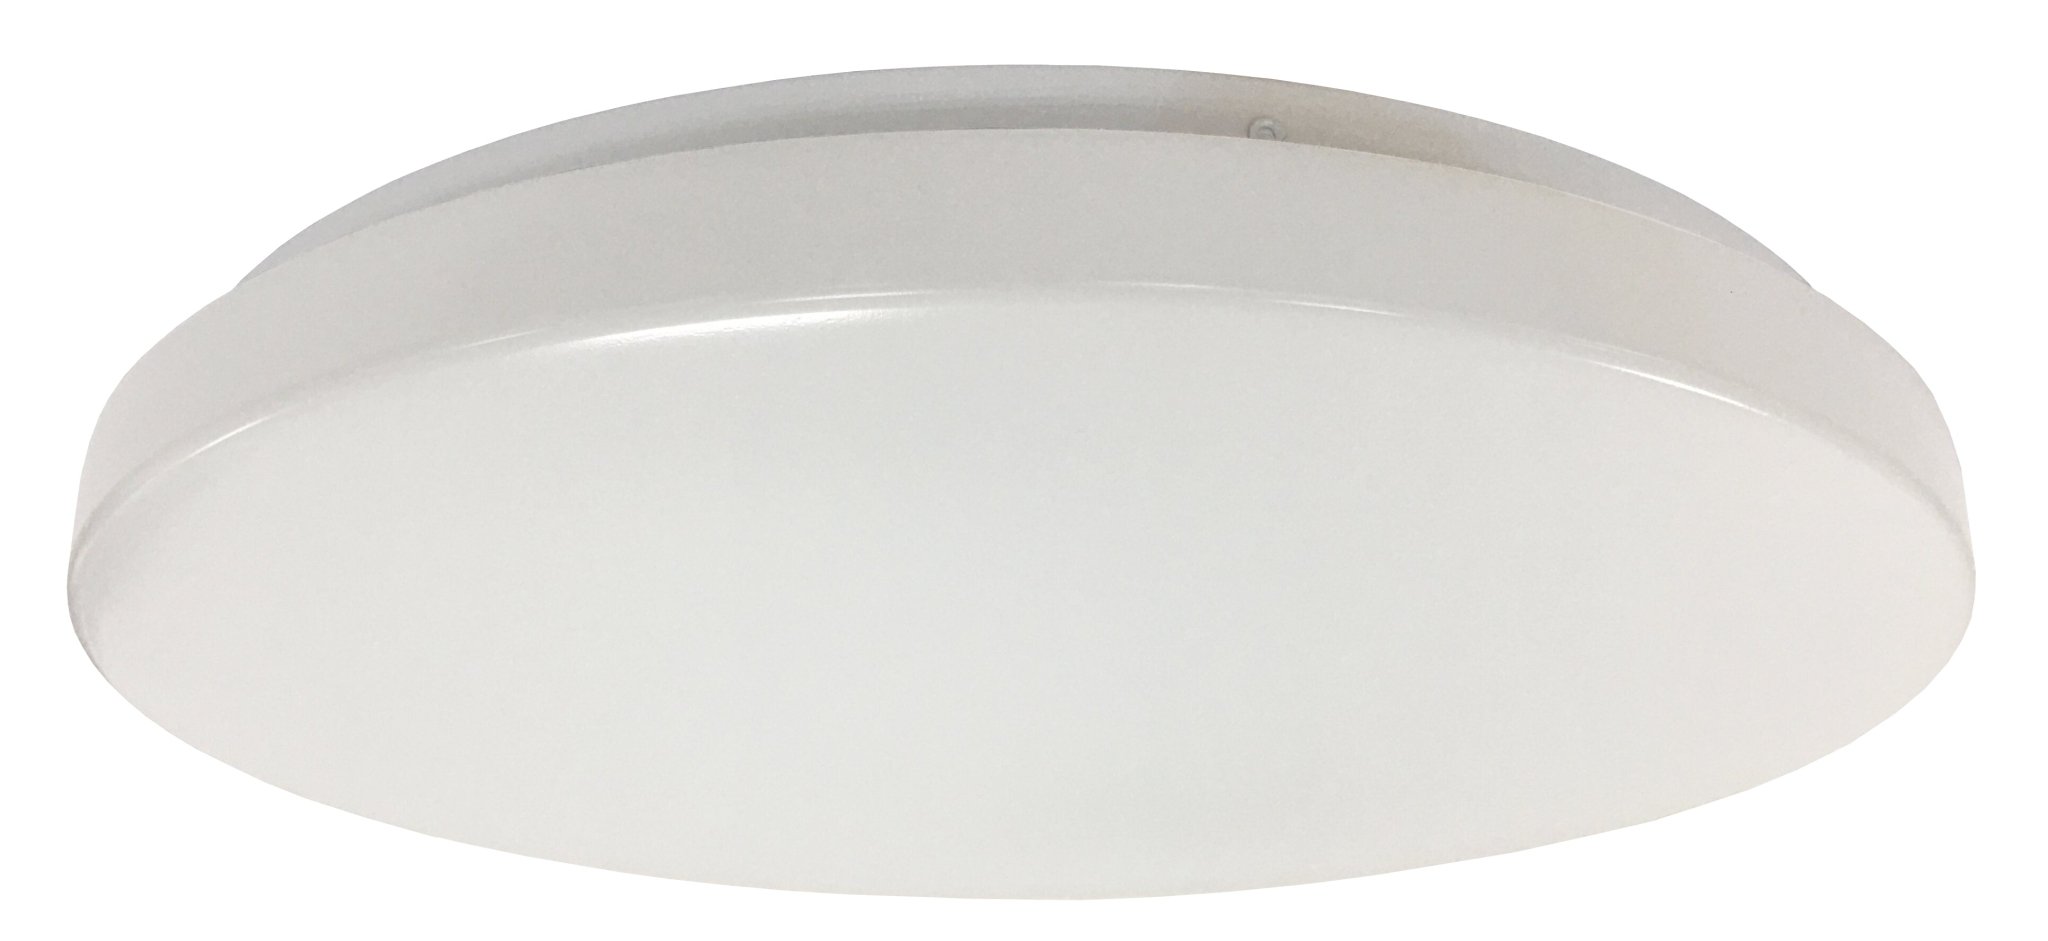 Orbit LED Oyster Light Tricolour in White 28w - Mases LightingMartec